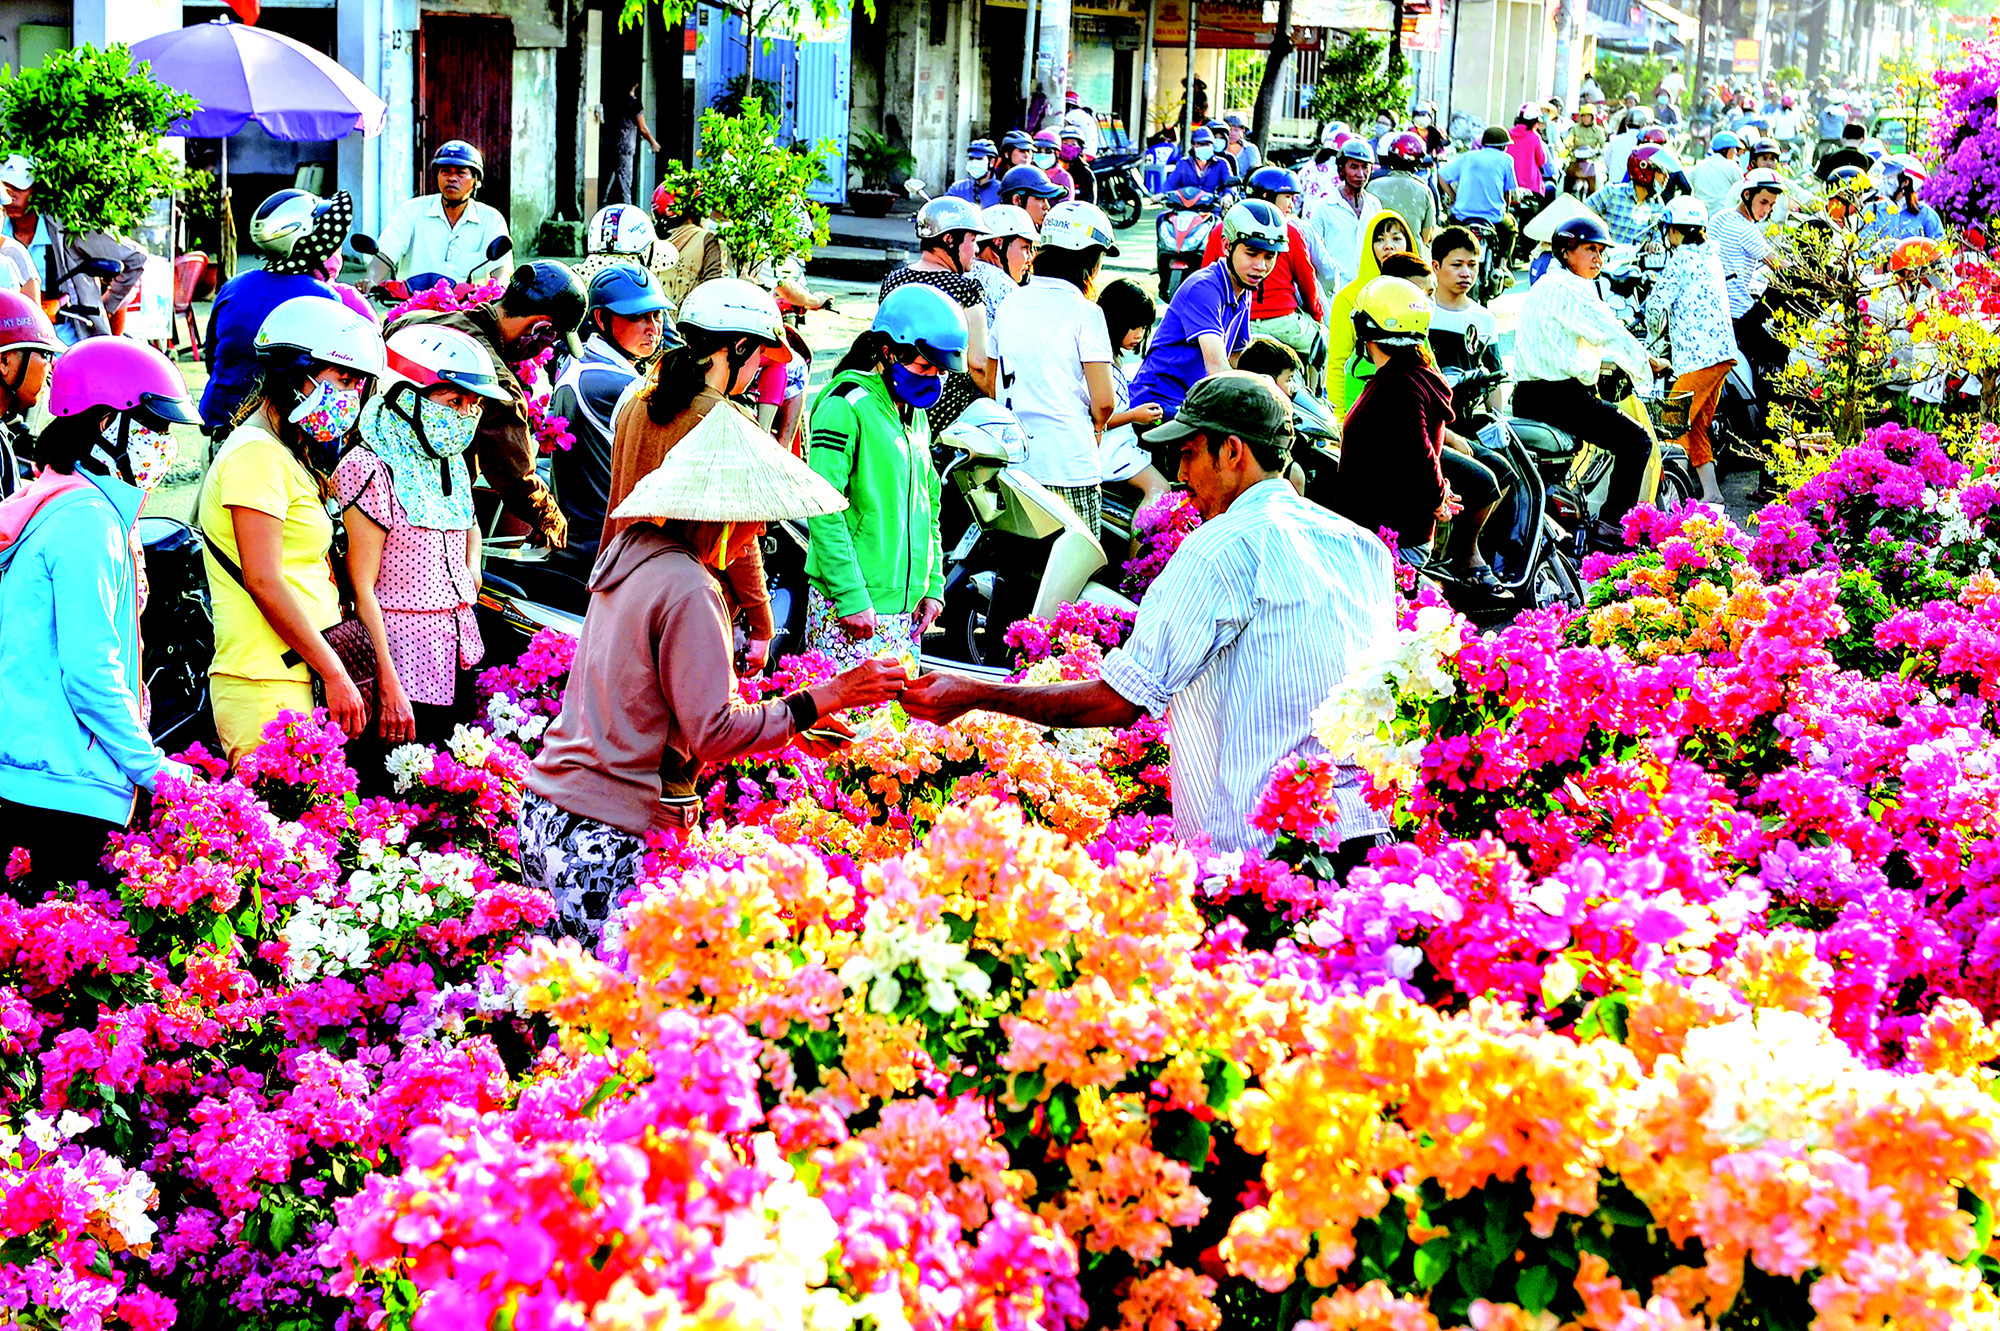 Chợ Tết là nơi vô cùng đặc biệt, đầy sắc màu và tinh hoa của ngày Tết. Hãy hòa mình vào không khí sôi động với hình ảnh chợ Tết đang chào đón du khách trên từng con đường. Cảm nhận sự đa dạng của sản phầm, hương vị đặc trưng và nét văn hóa đặc sắc của Việt Nam.